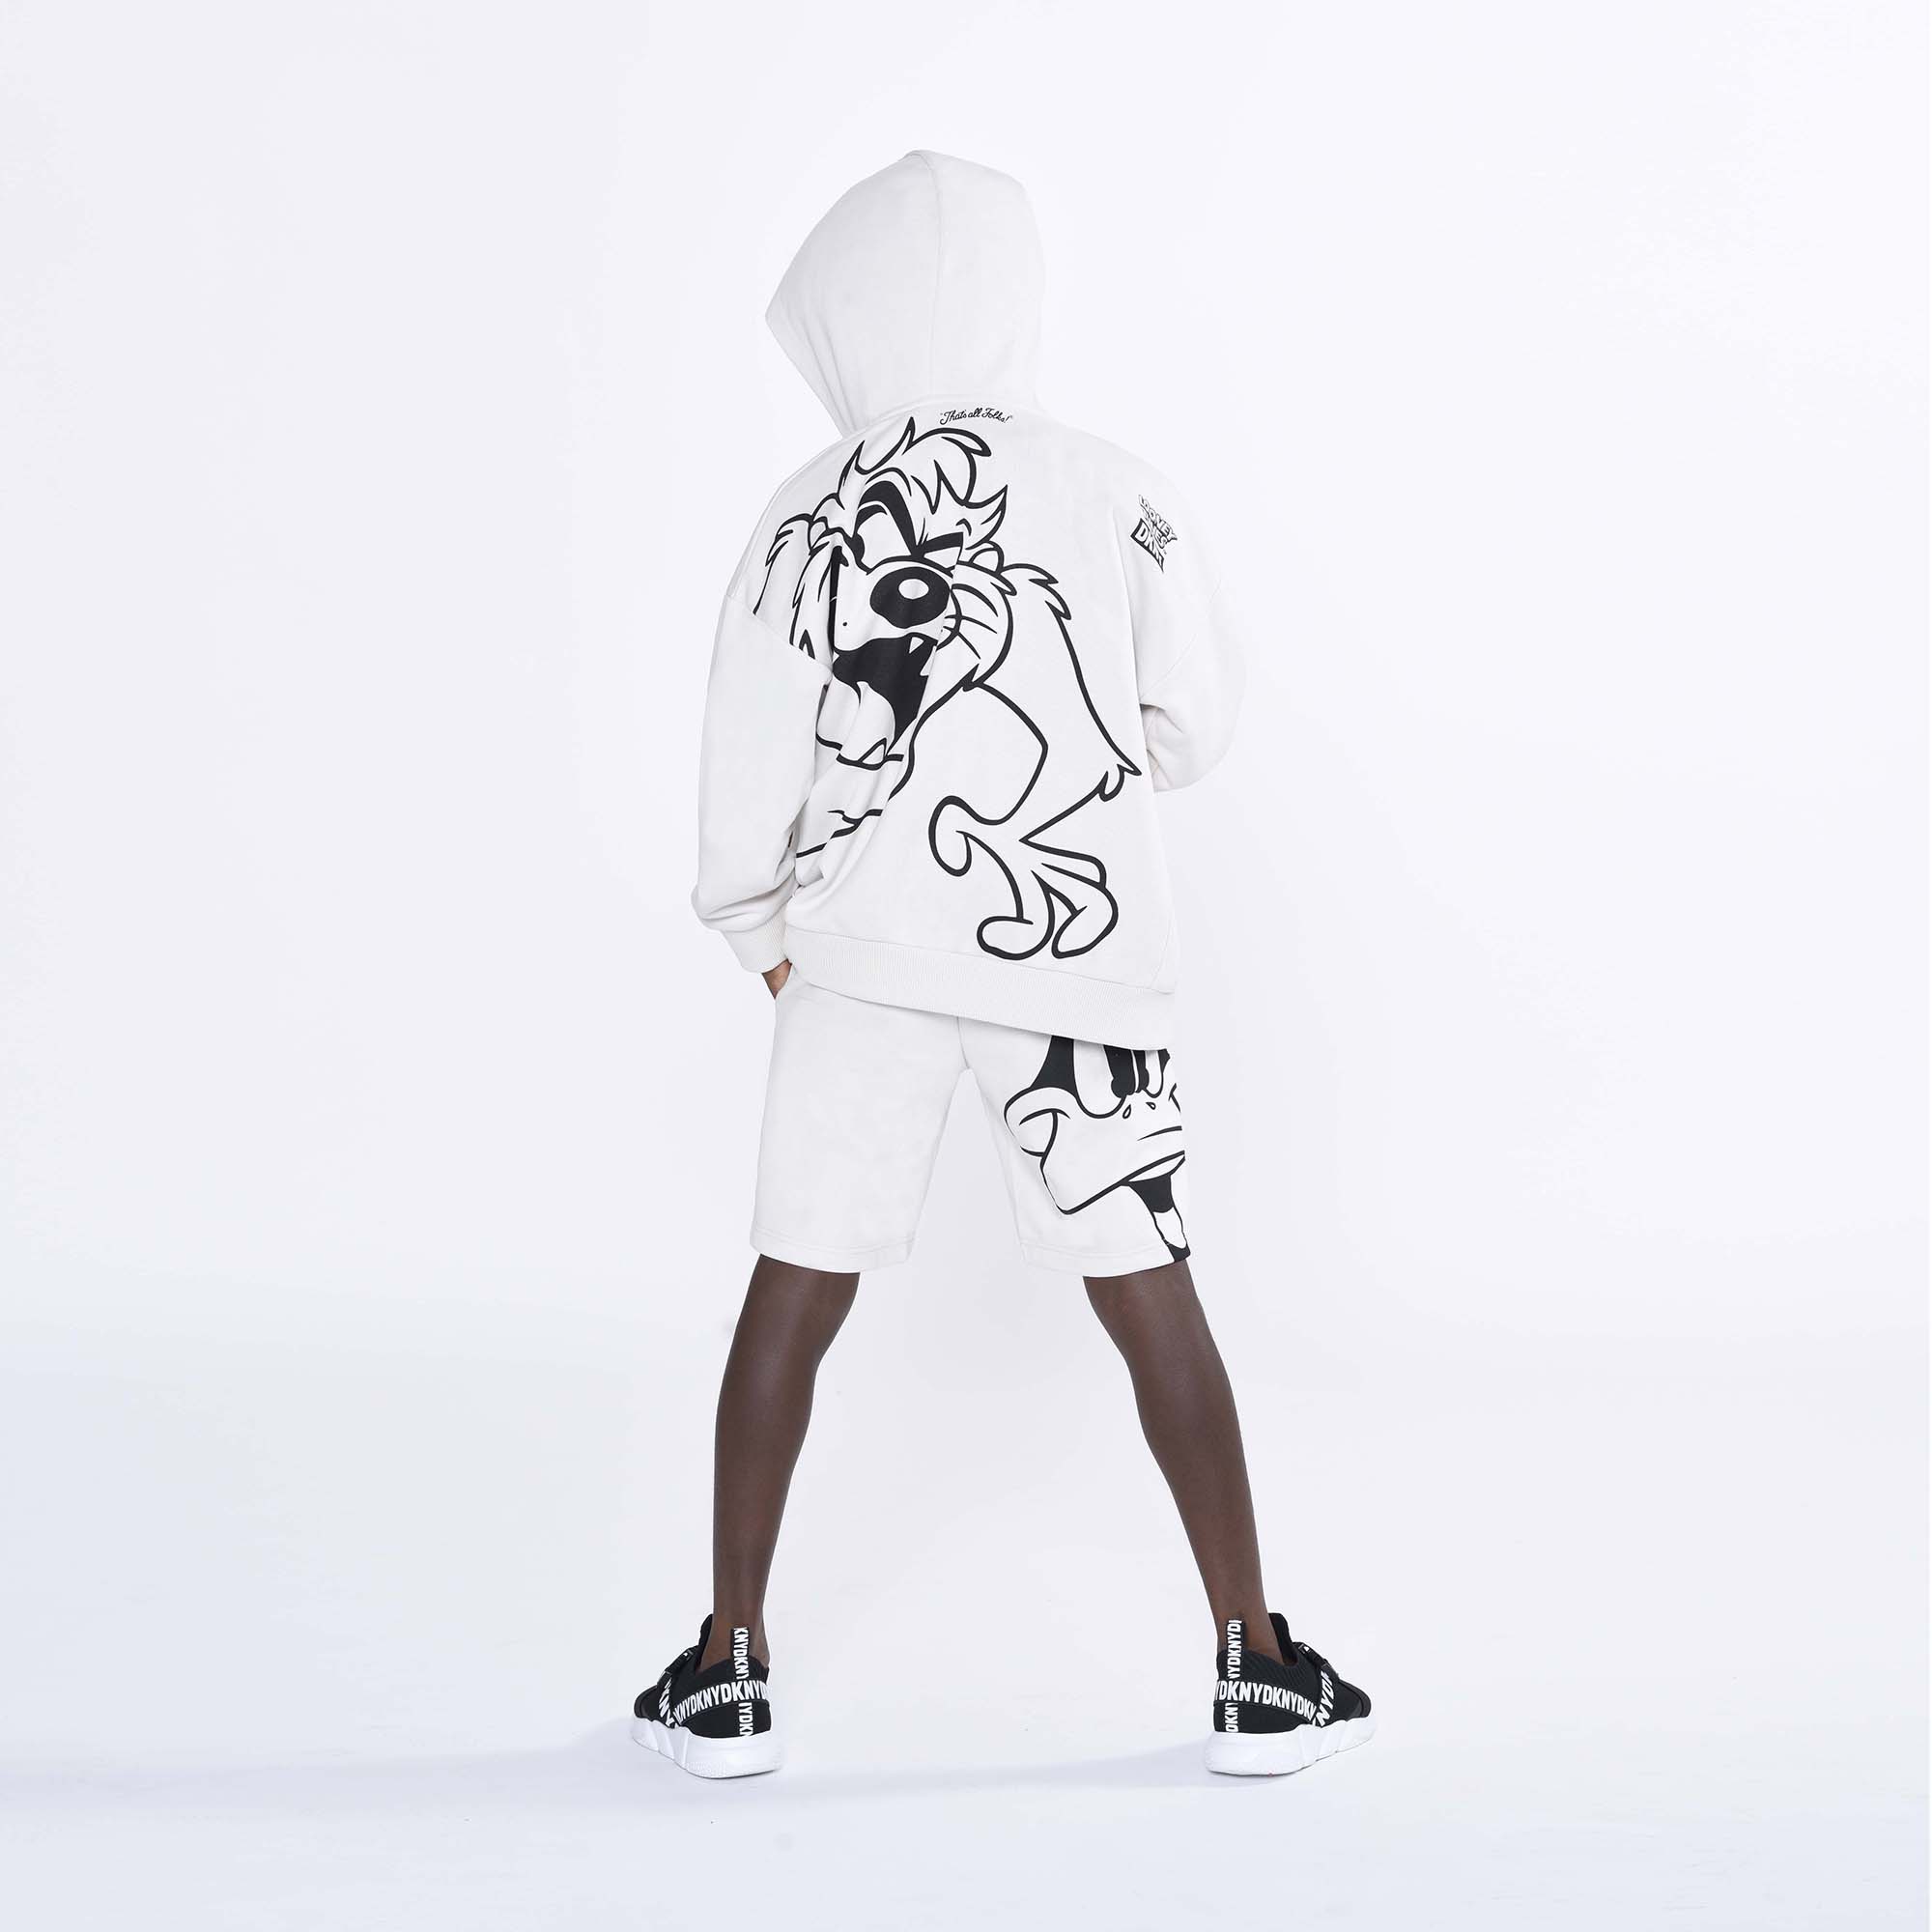 Unisex-short van fleece DKNY Voor